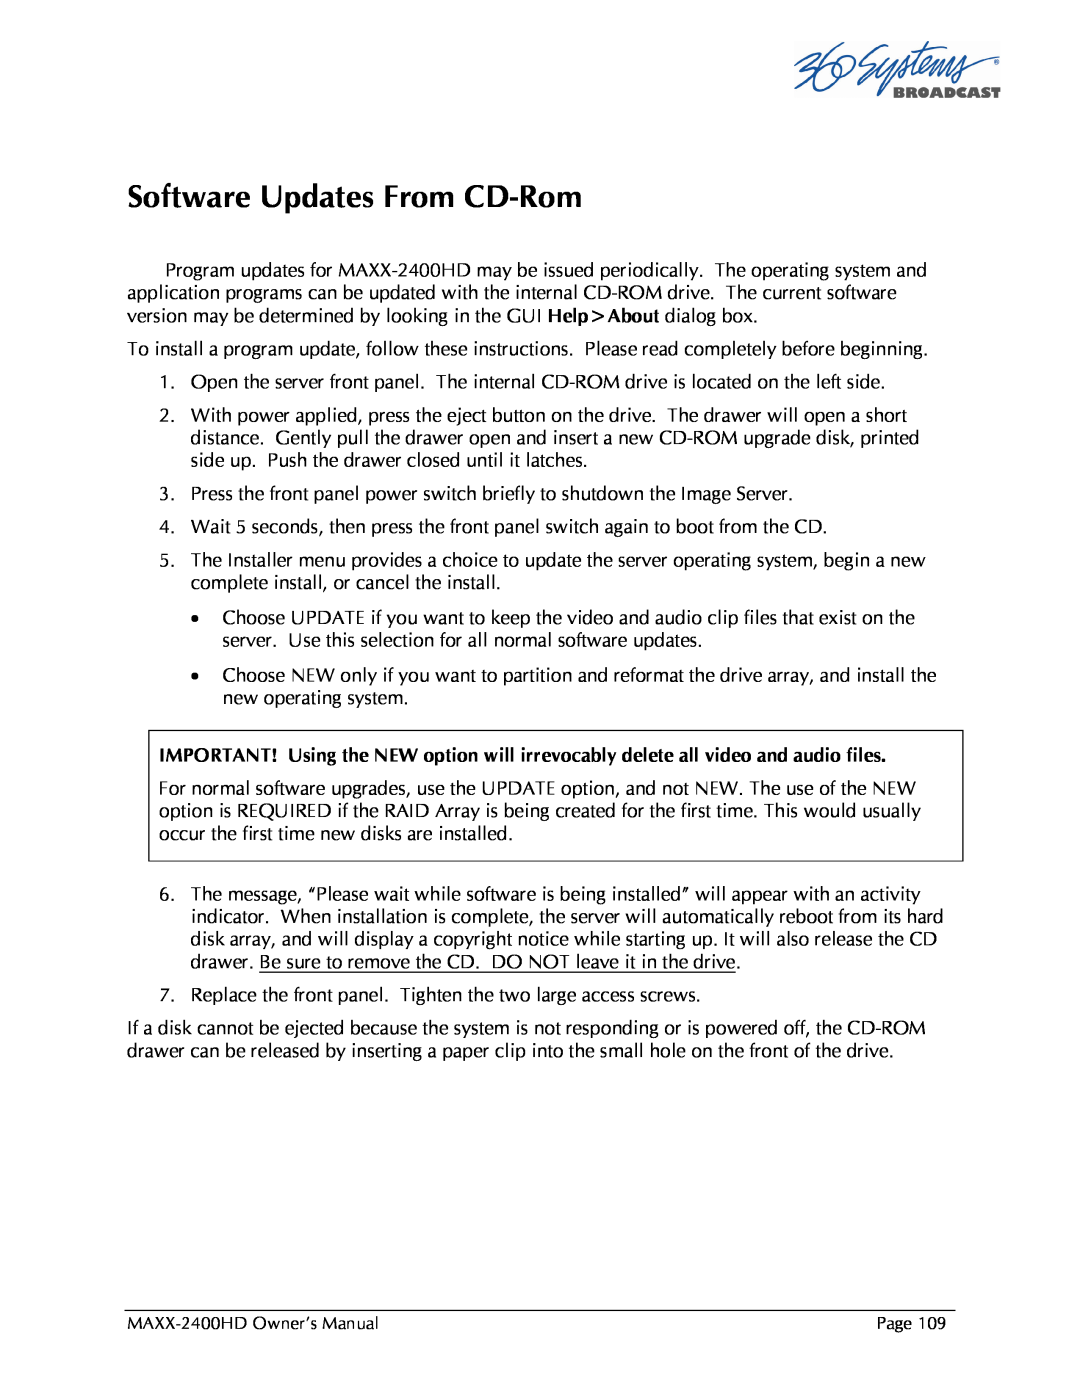 Maxxsonics MAXX-2400HD manual Software Updates From CD-Rom 